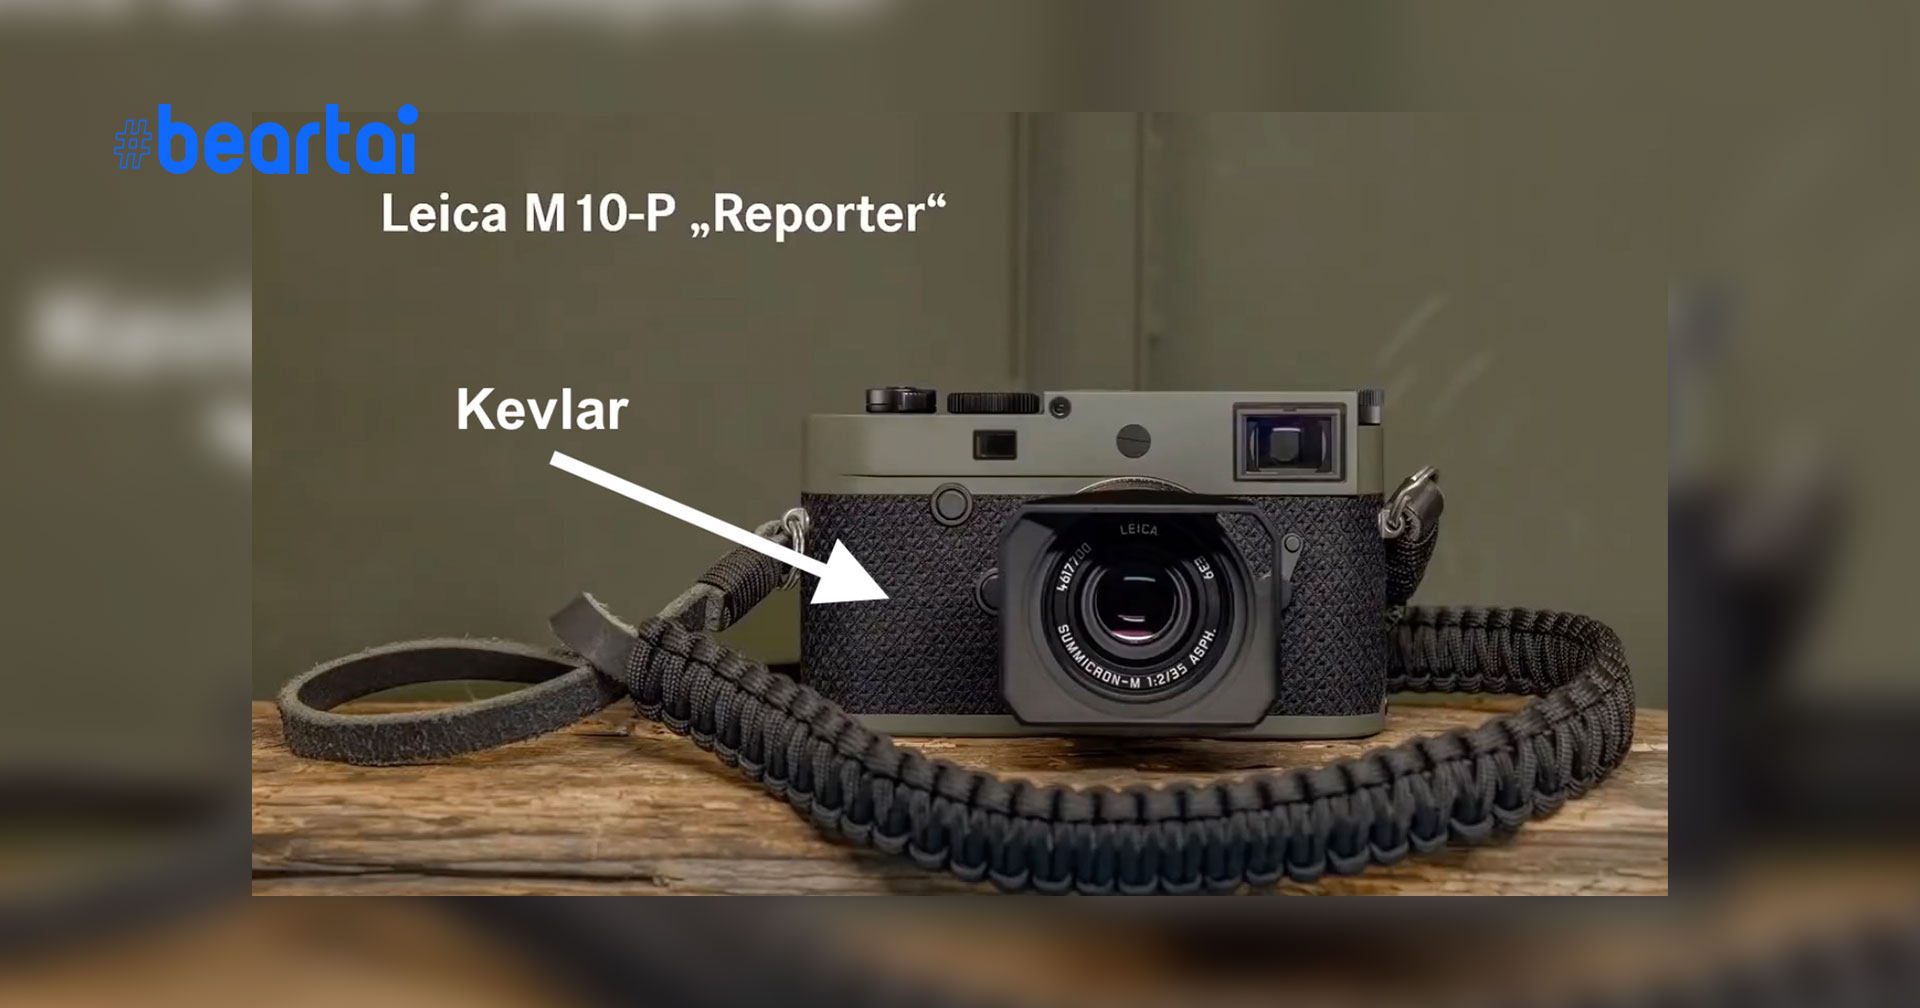 สุดจัด! Leica M10-P “Reporter” จะมาพร้อม Kevlar armor ที่สามารถกันกระสุนปืนได้